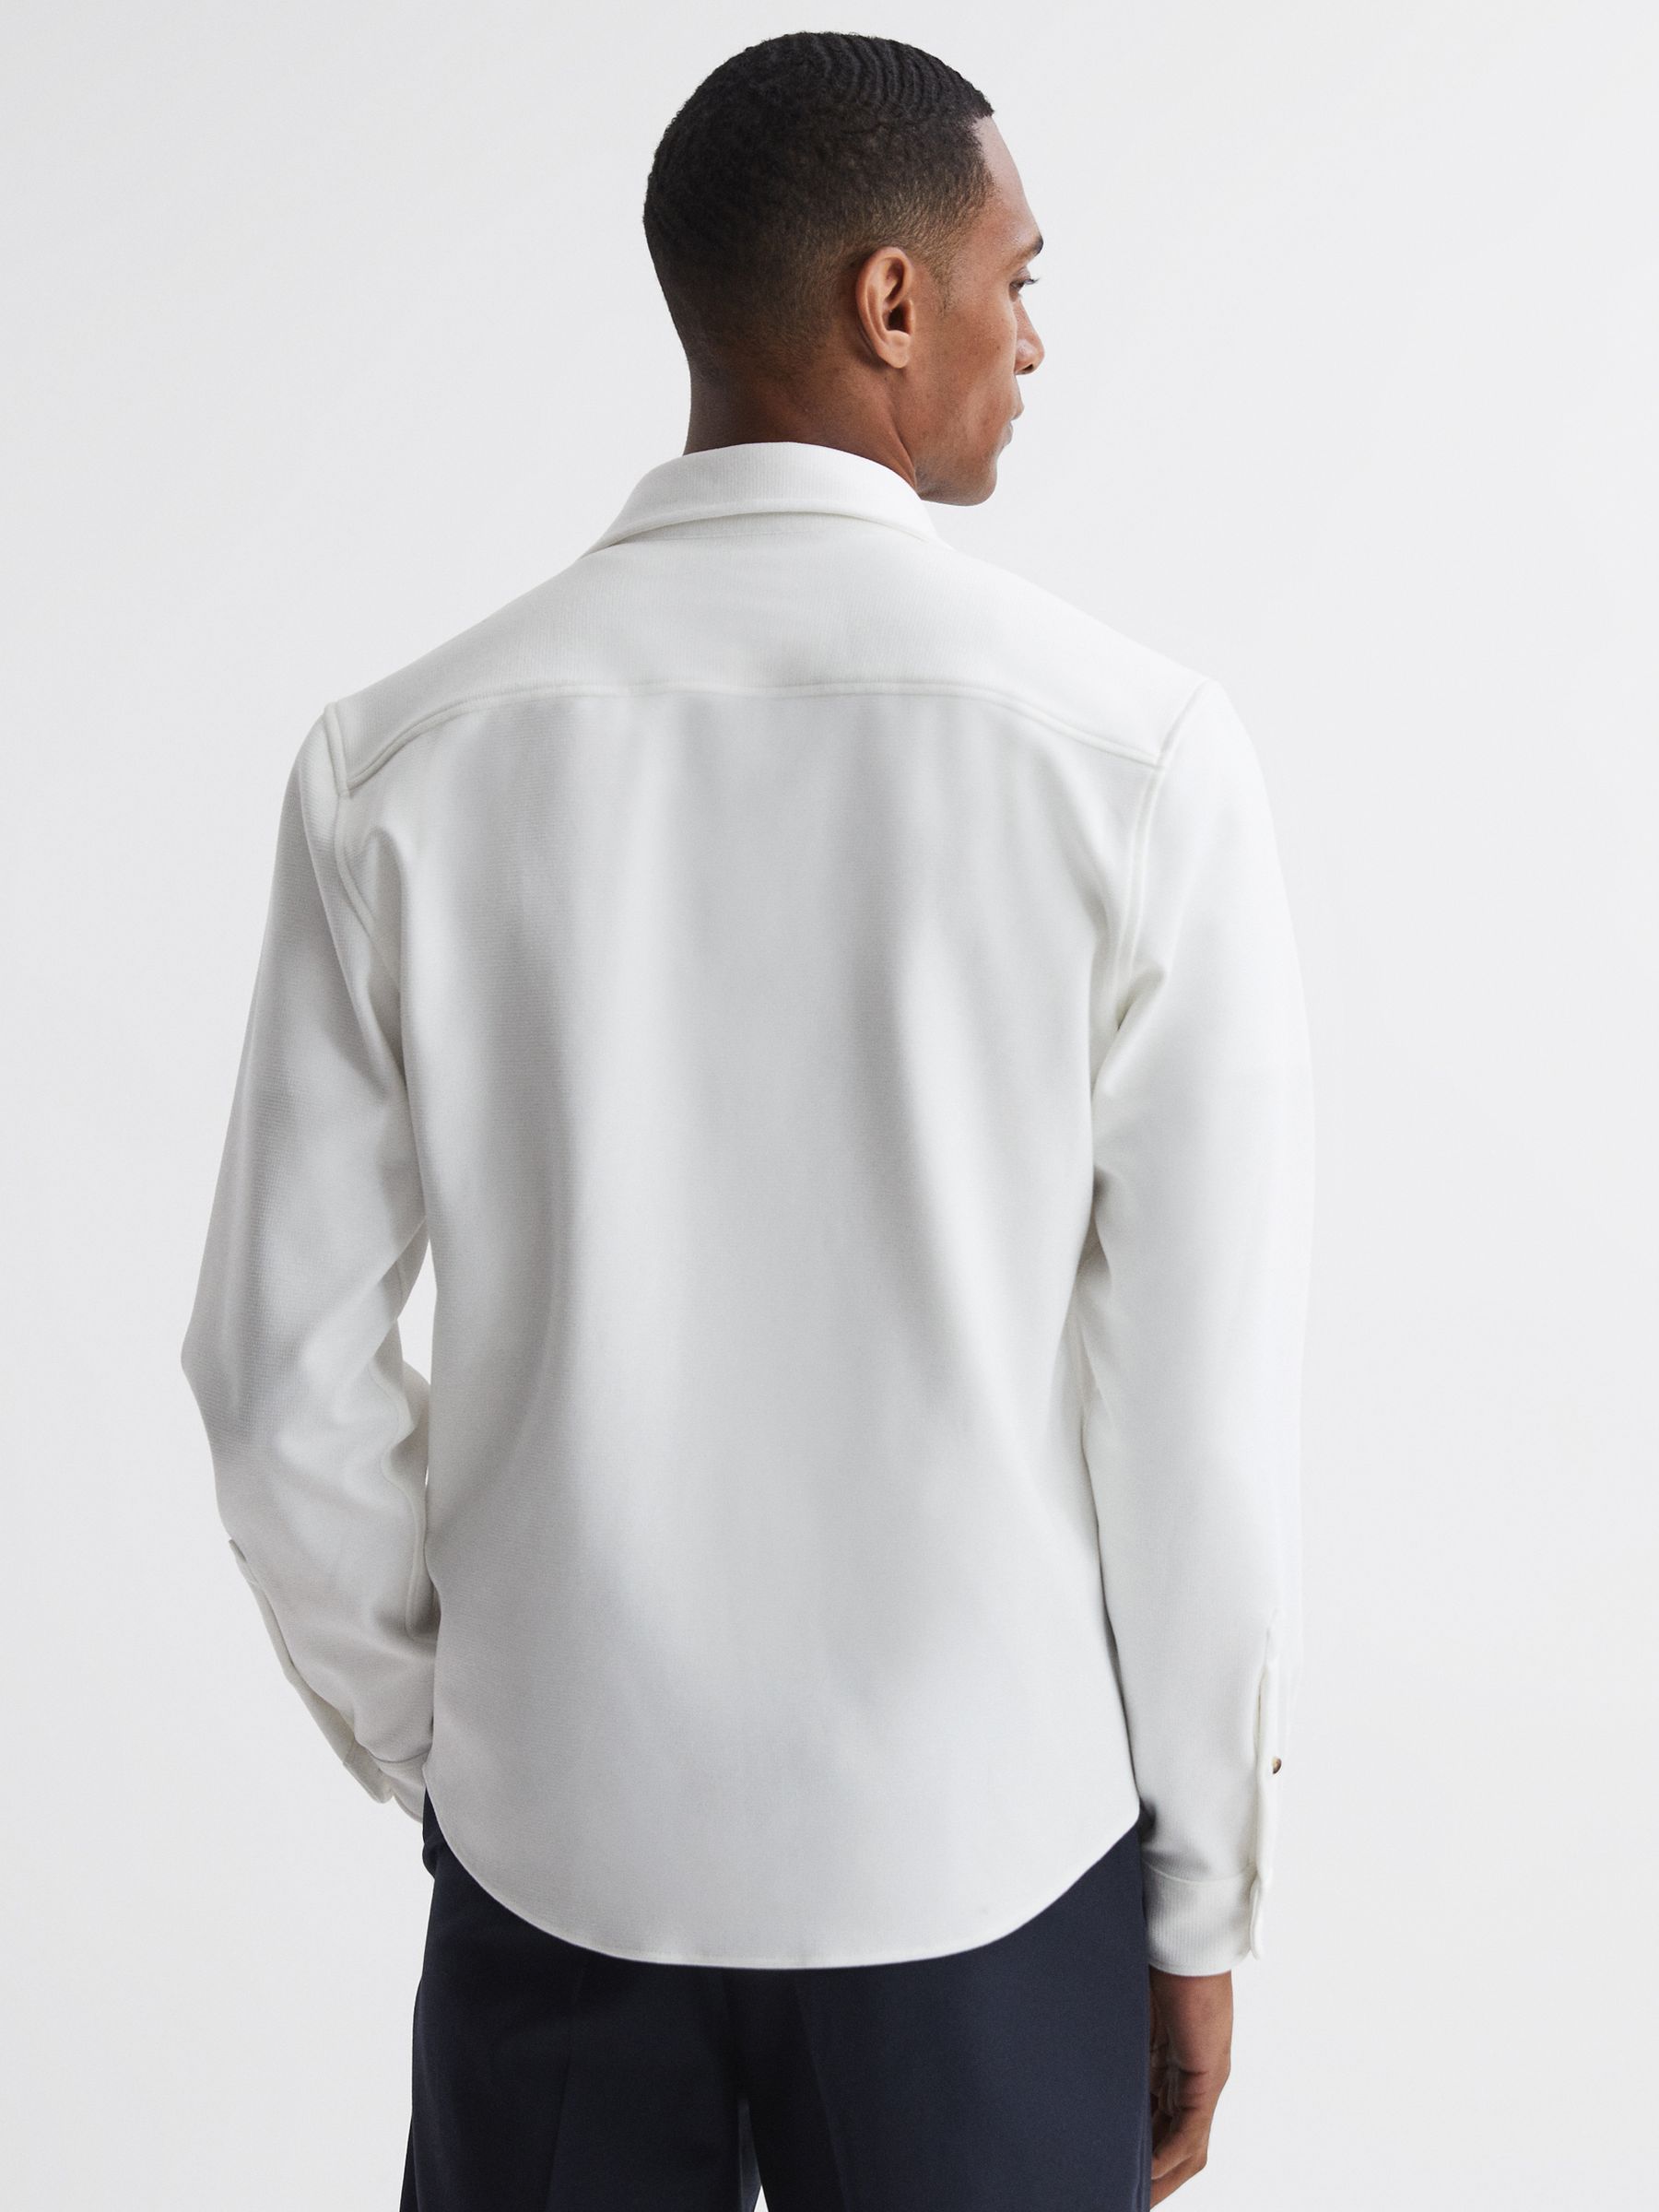 Reiss Moritz Textured Button-Through Overshirt | REISS USA